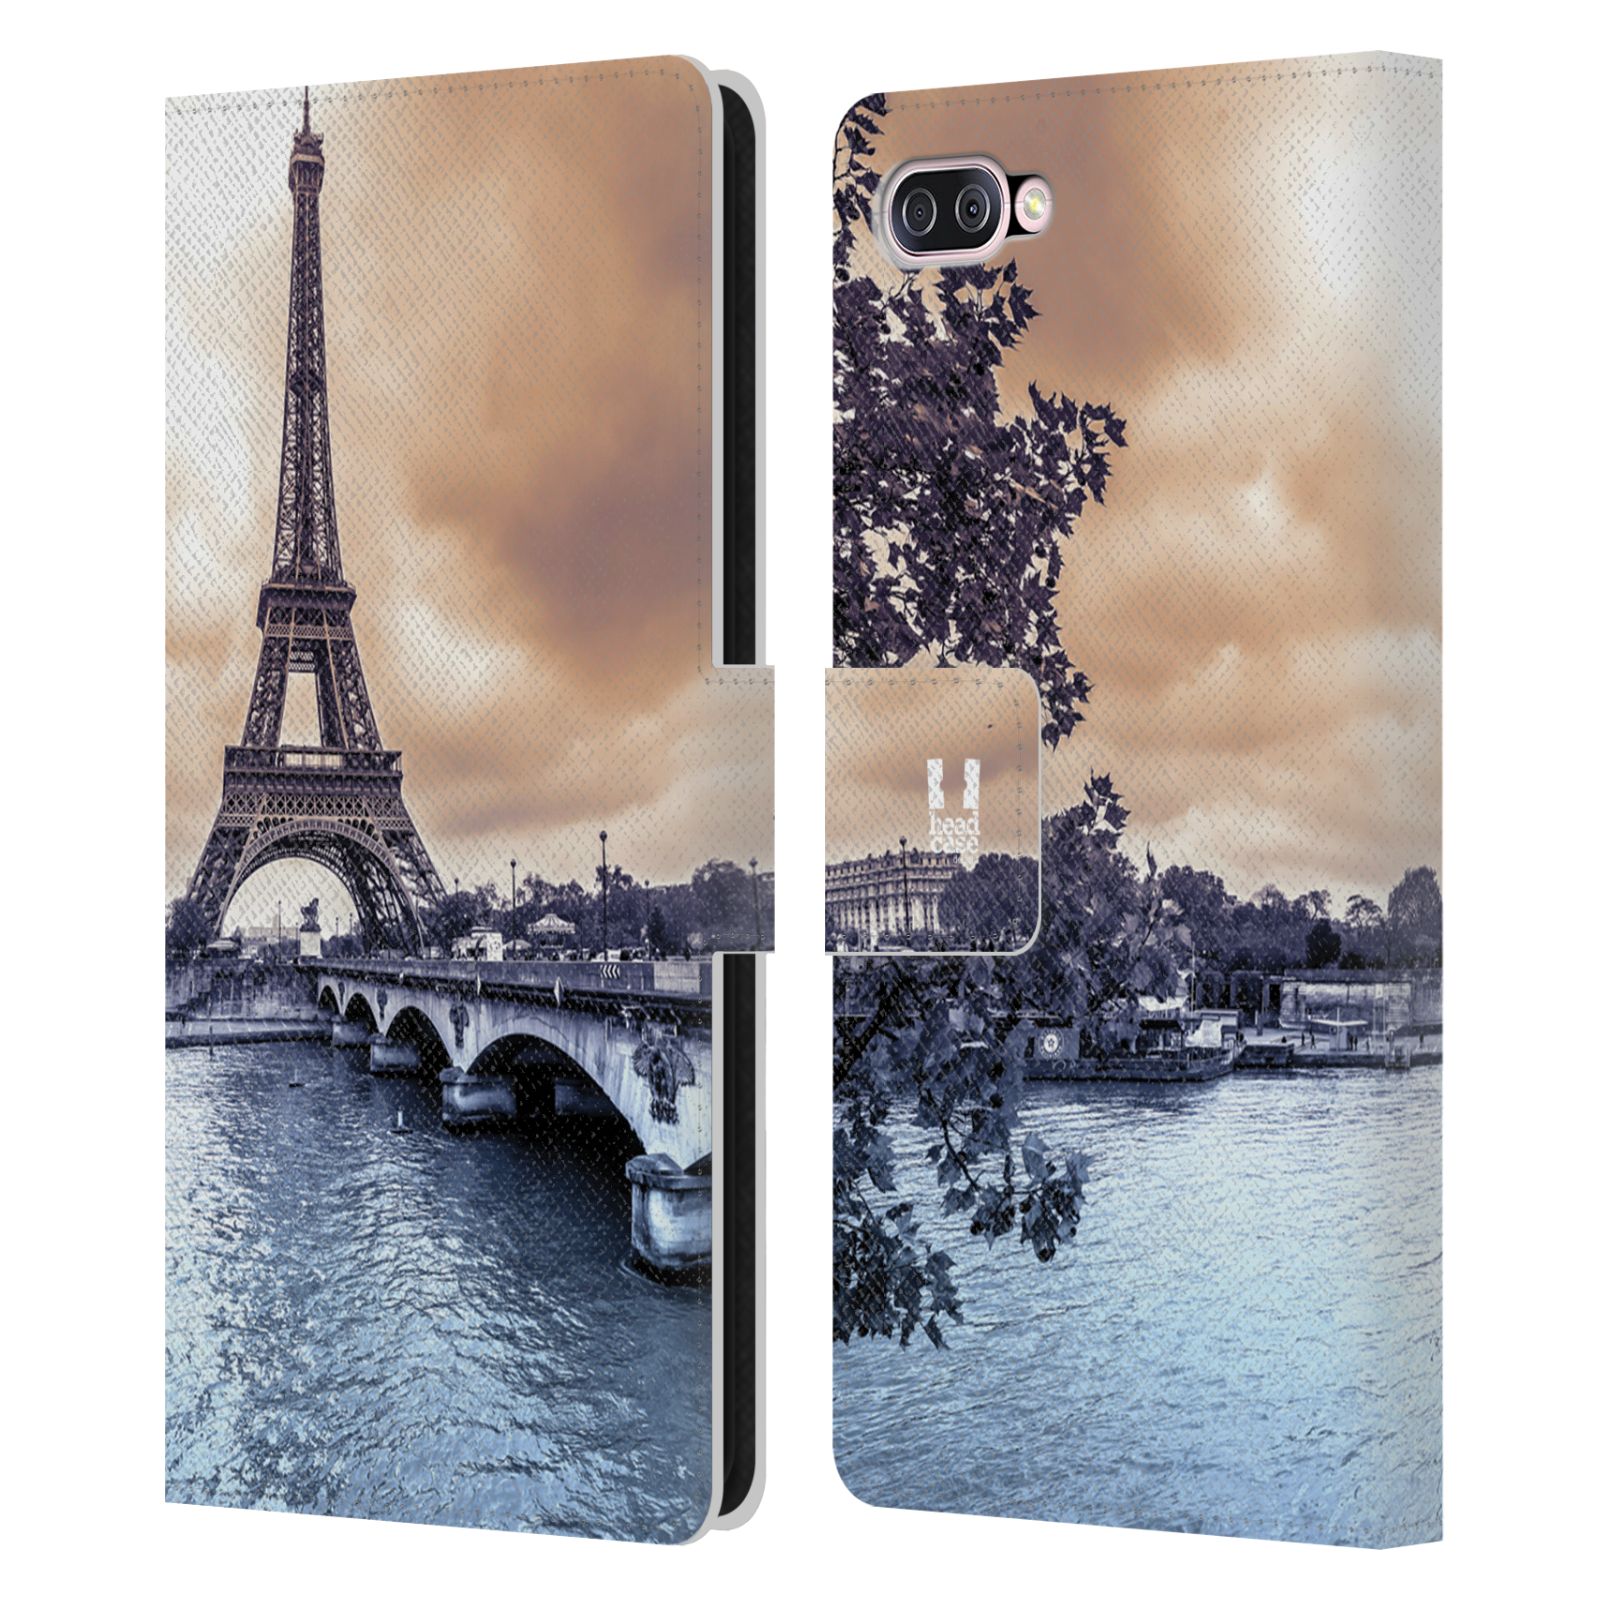 Pouzdro pro mobil Asus Zenfone 4 Max (ZC554KL)  - Eiffelova věž Paříž - Francie